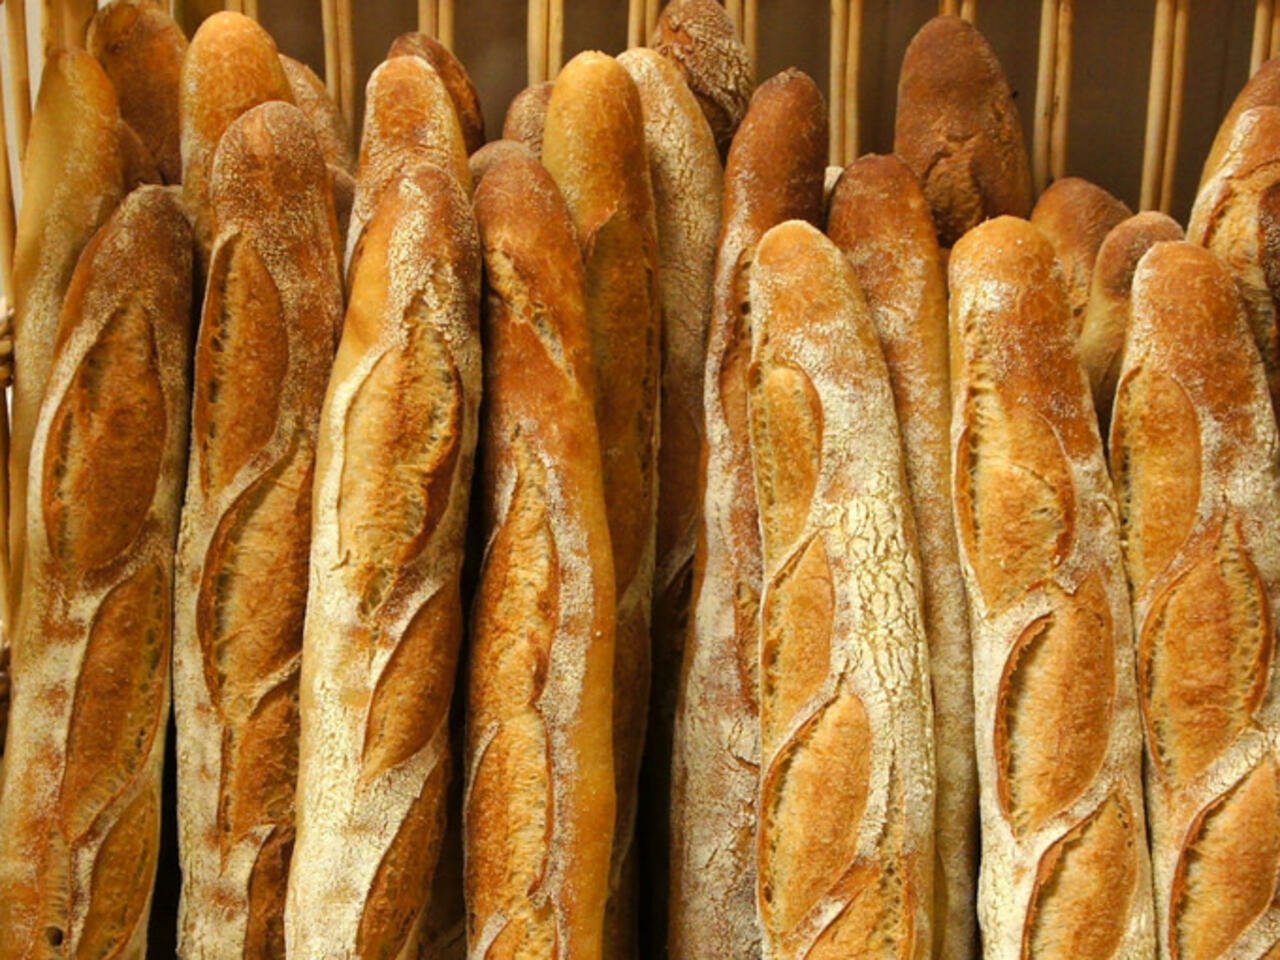 le prix du pain fait partie des prix administrés par l’Etat et il ne revient pas aux boulangers de facto de procéder à une augmentation sans que cela ne soit décidé ensemble avec le gouvernement parce que le pain est un produit de grande consommation